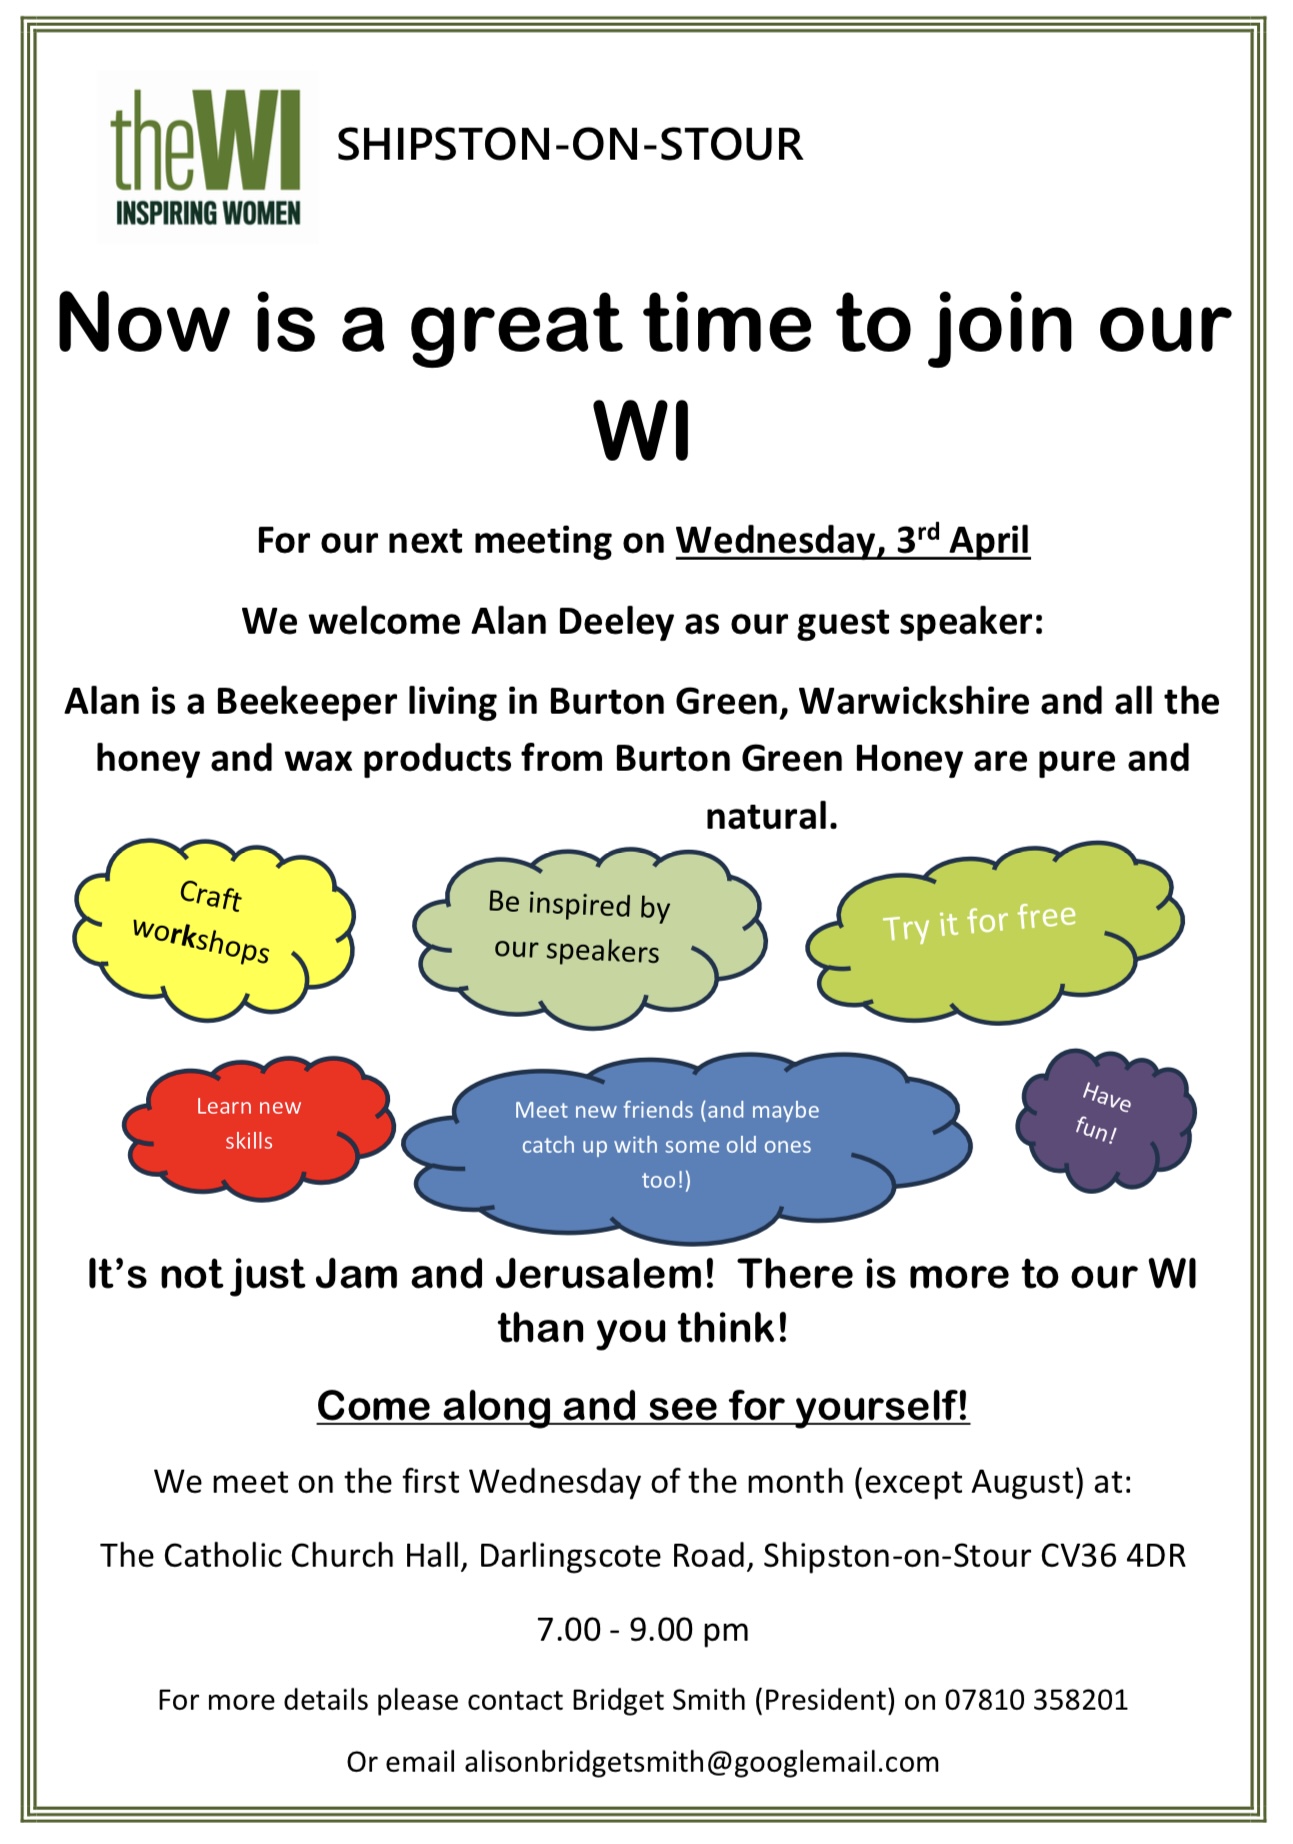 Shipston on Stour WI meeting - Wednesday 3 April